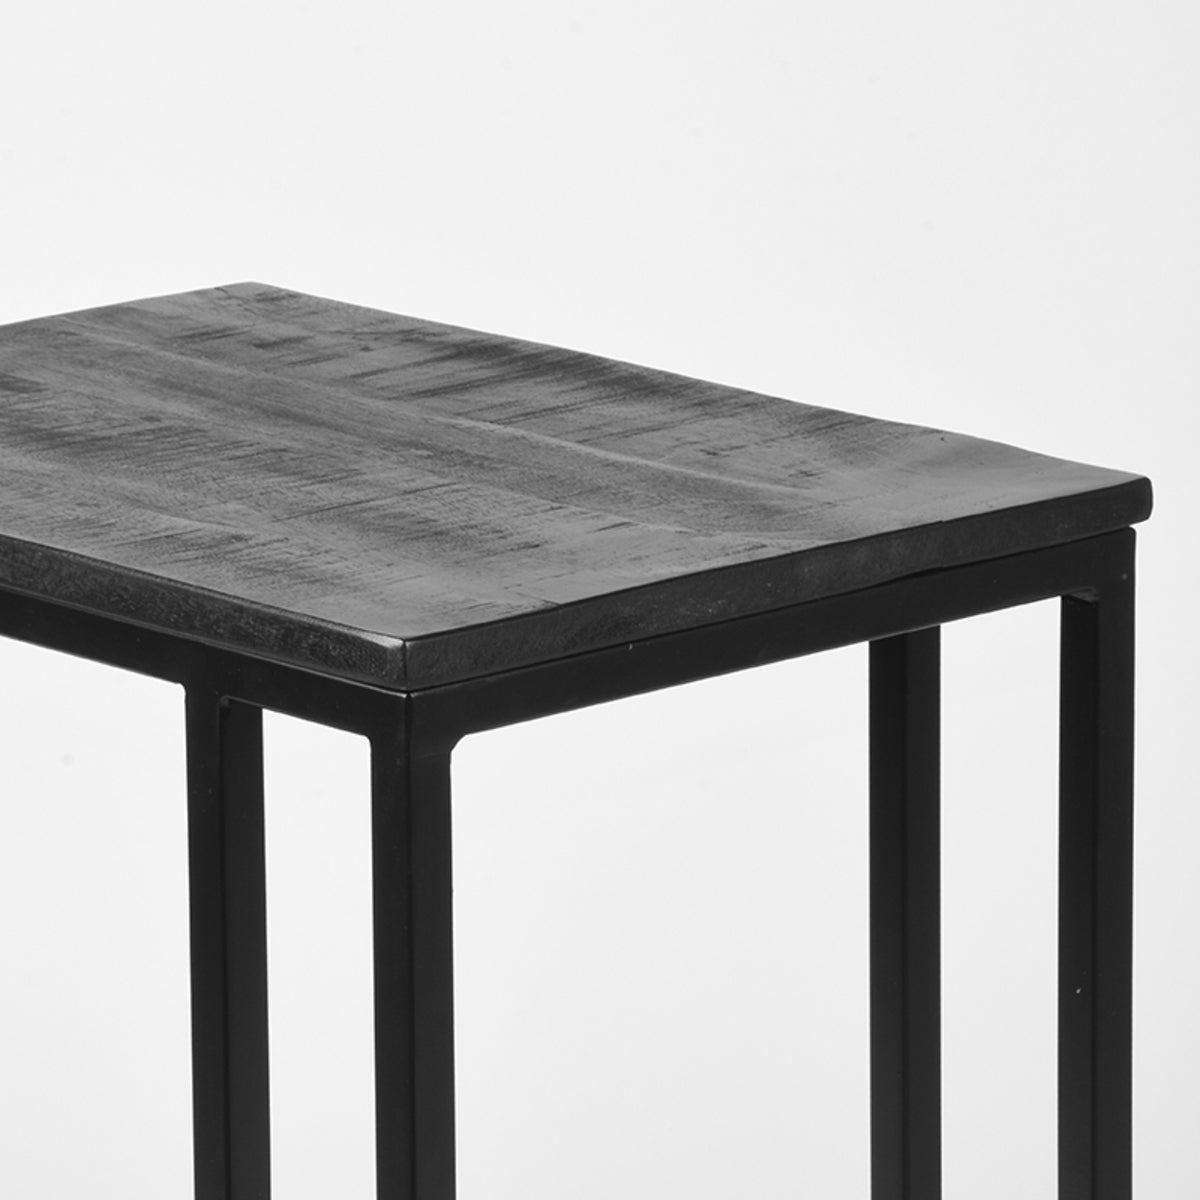 Nancy's Side Table Move - Table pour ordinateur portable - Tables d'appoint - Industriel - Bois - Noir - 35 x 50 x 61 cm